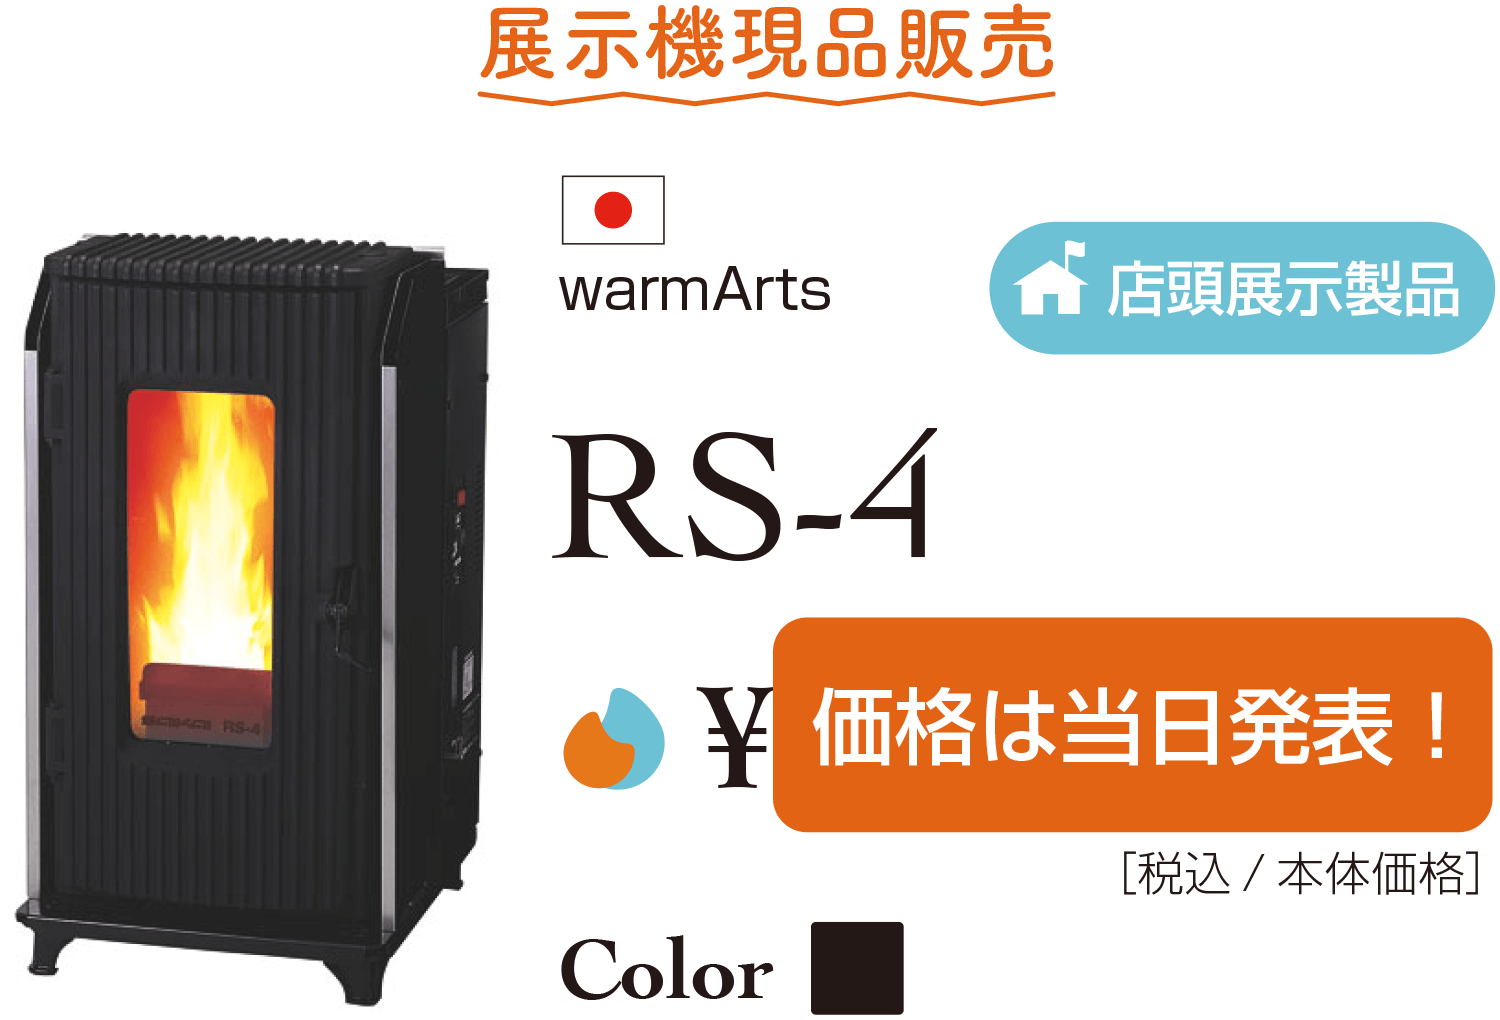 RS-4展示機特別価格販売